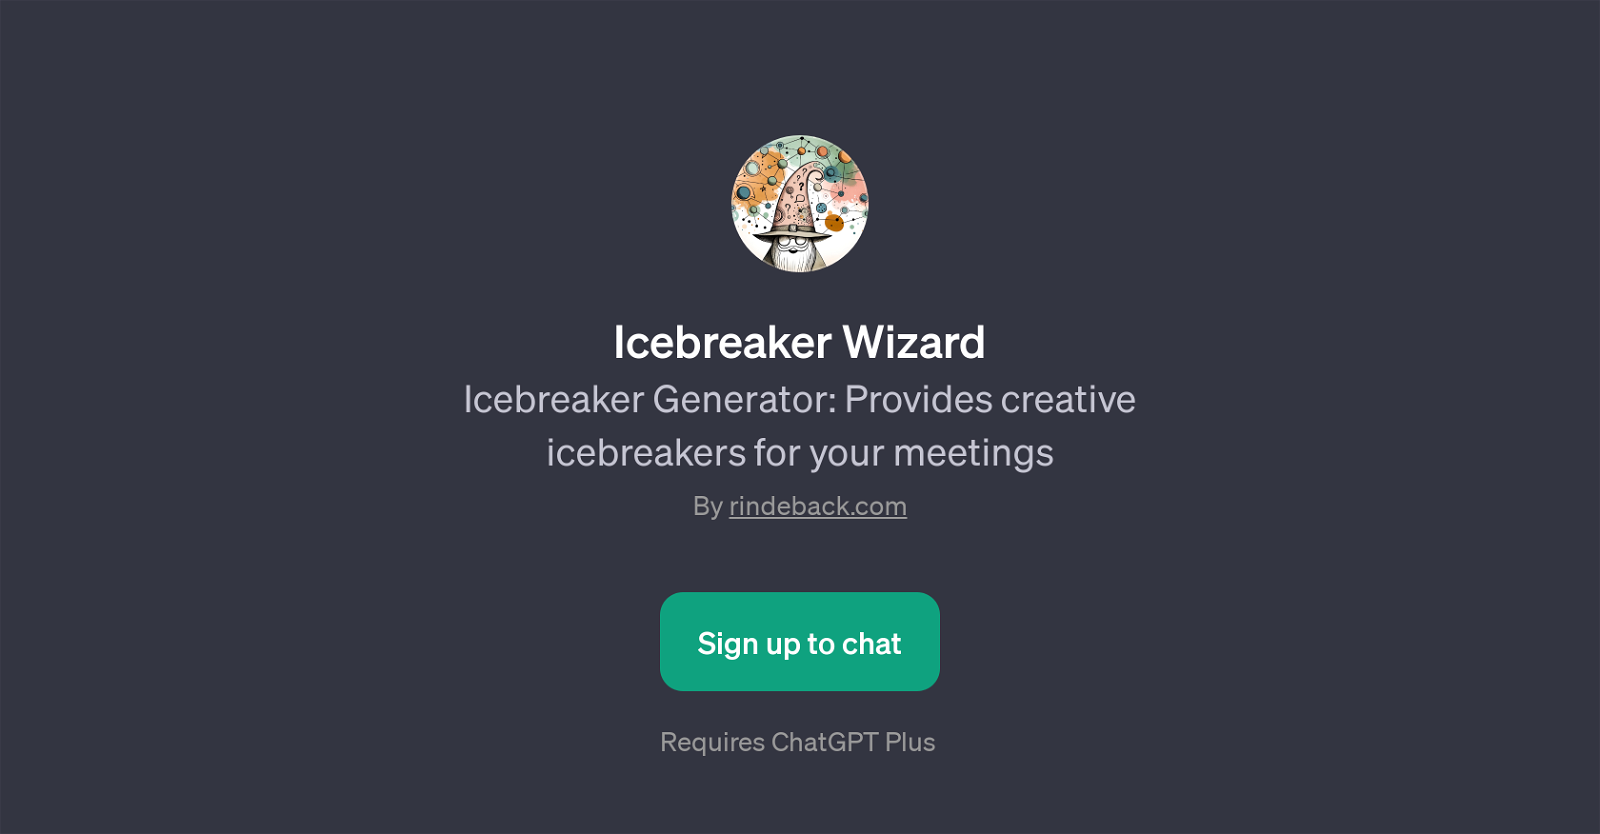 Icebreaker Wizard website